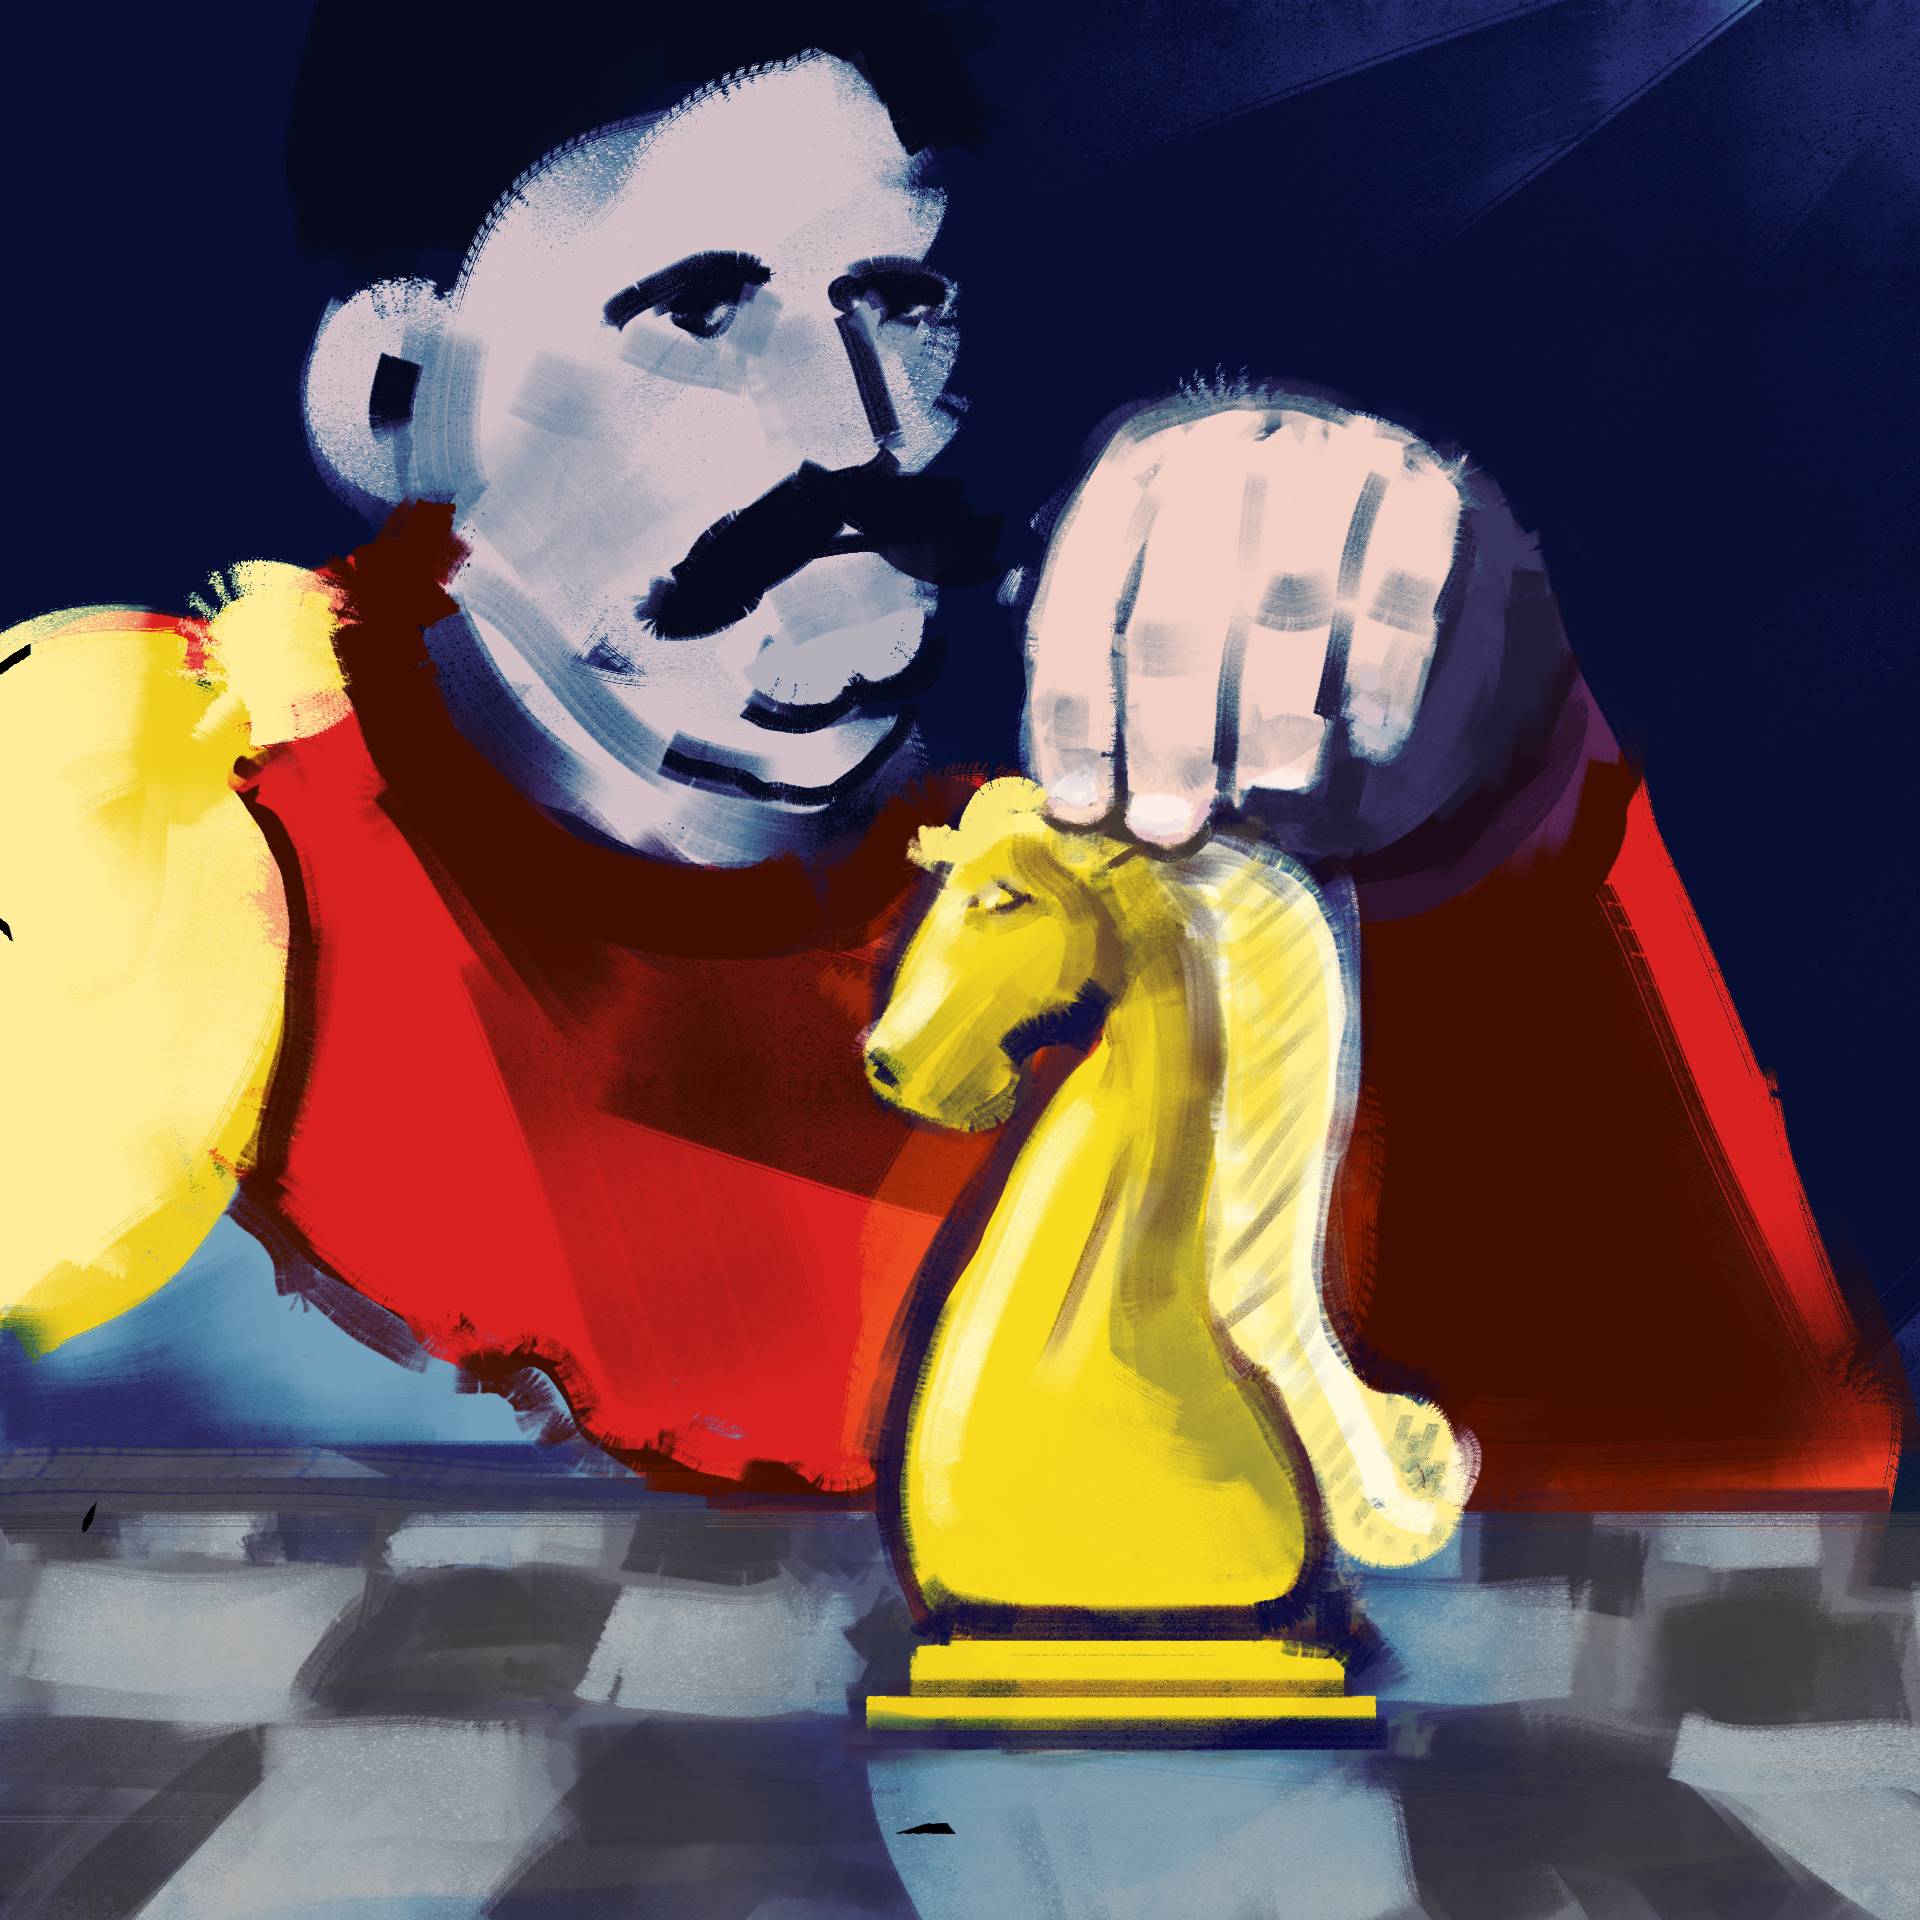 Rysunek mężczyzny z wąsami który przestawia na szachownicy figurę konia